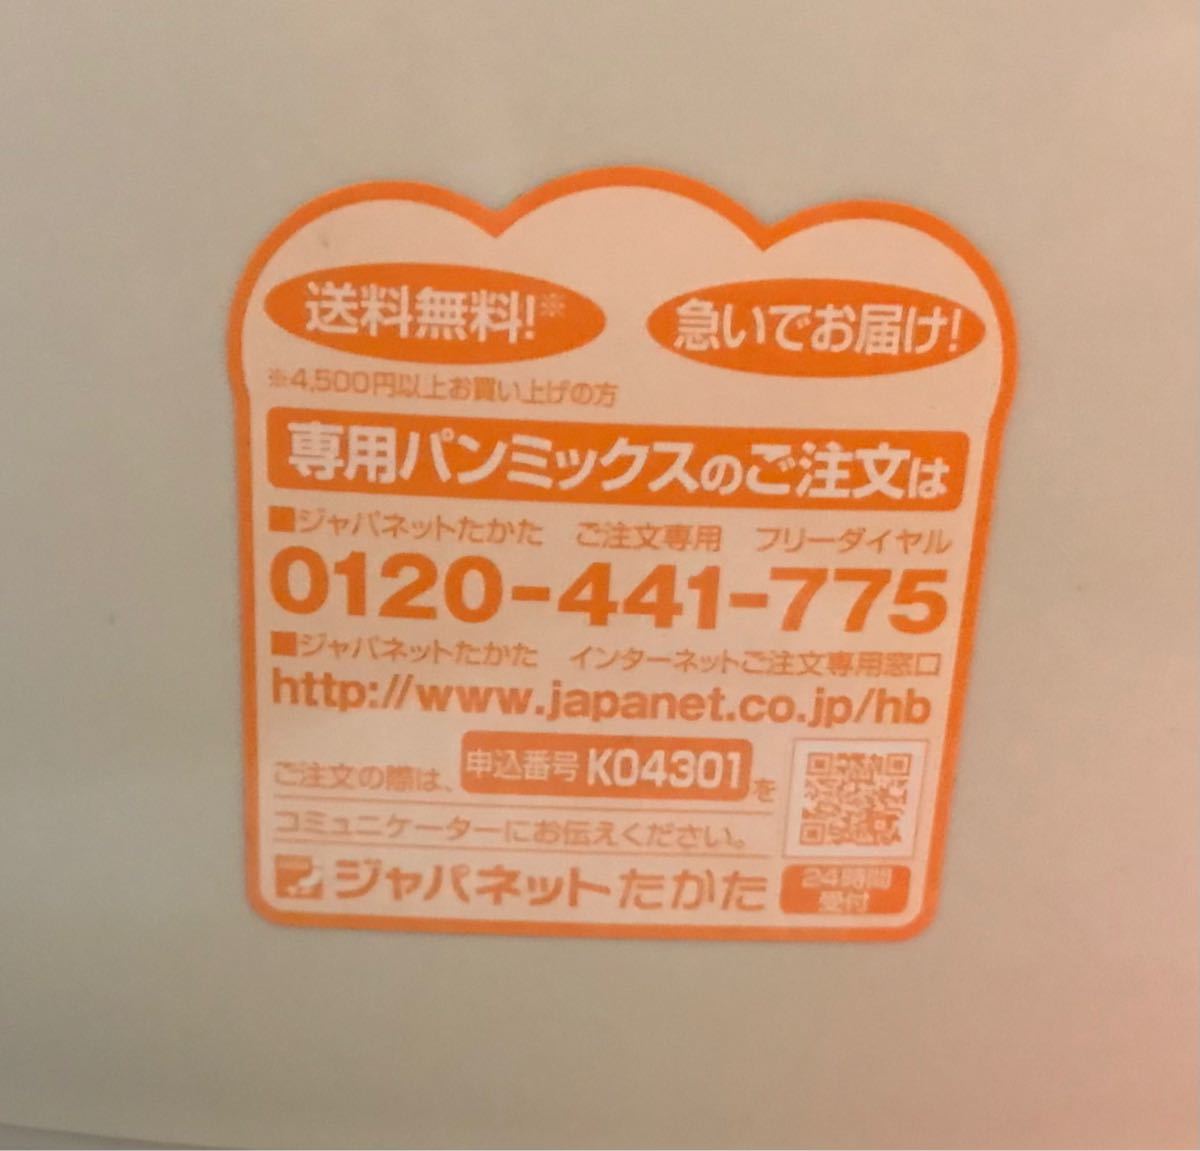 siroca ヨーグルト・パスタ生地も作れる 餅・米粉/ご飯パン対応 ホームベーカリー SHB-315神奈川限定